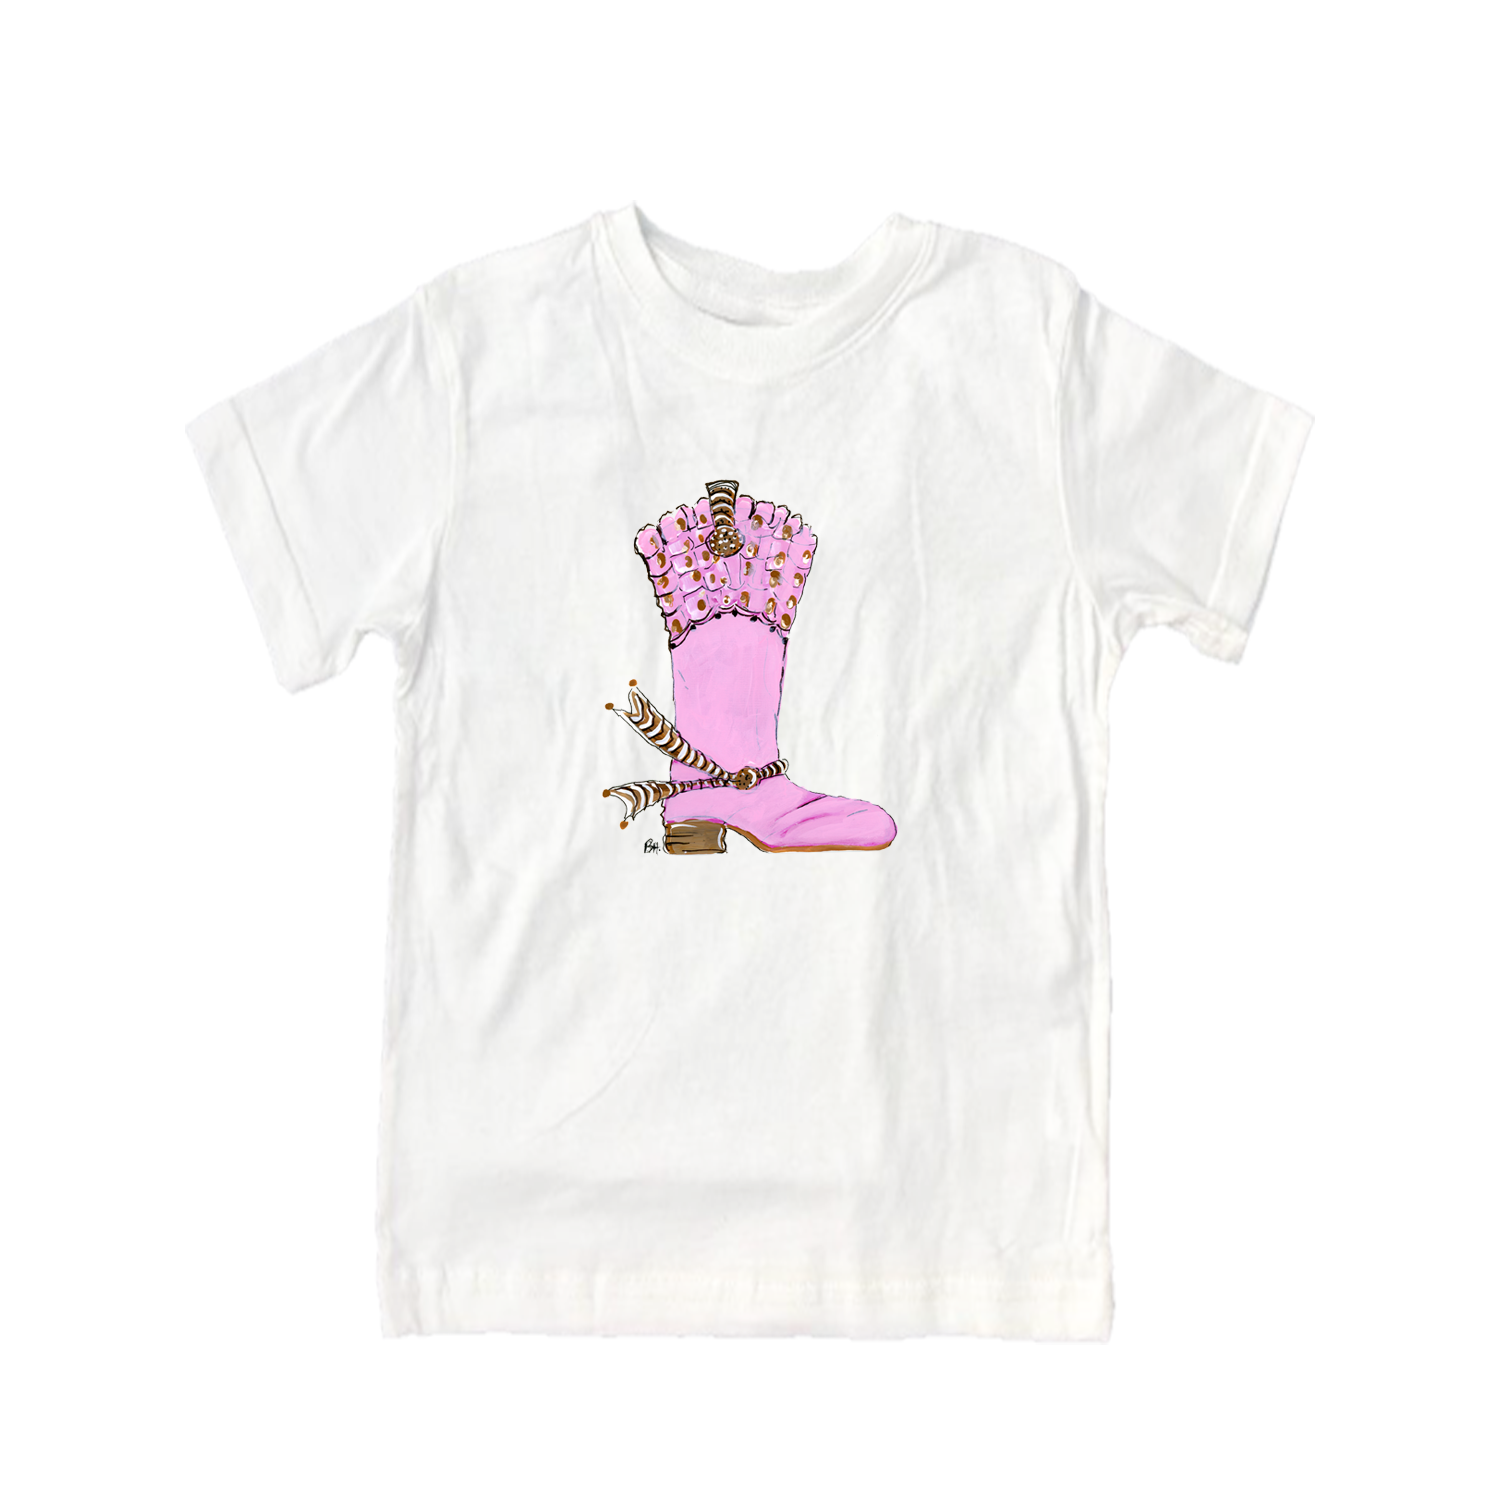 Cotton Tee Shirt Short Sleeve 952 Pink Boot